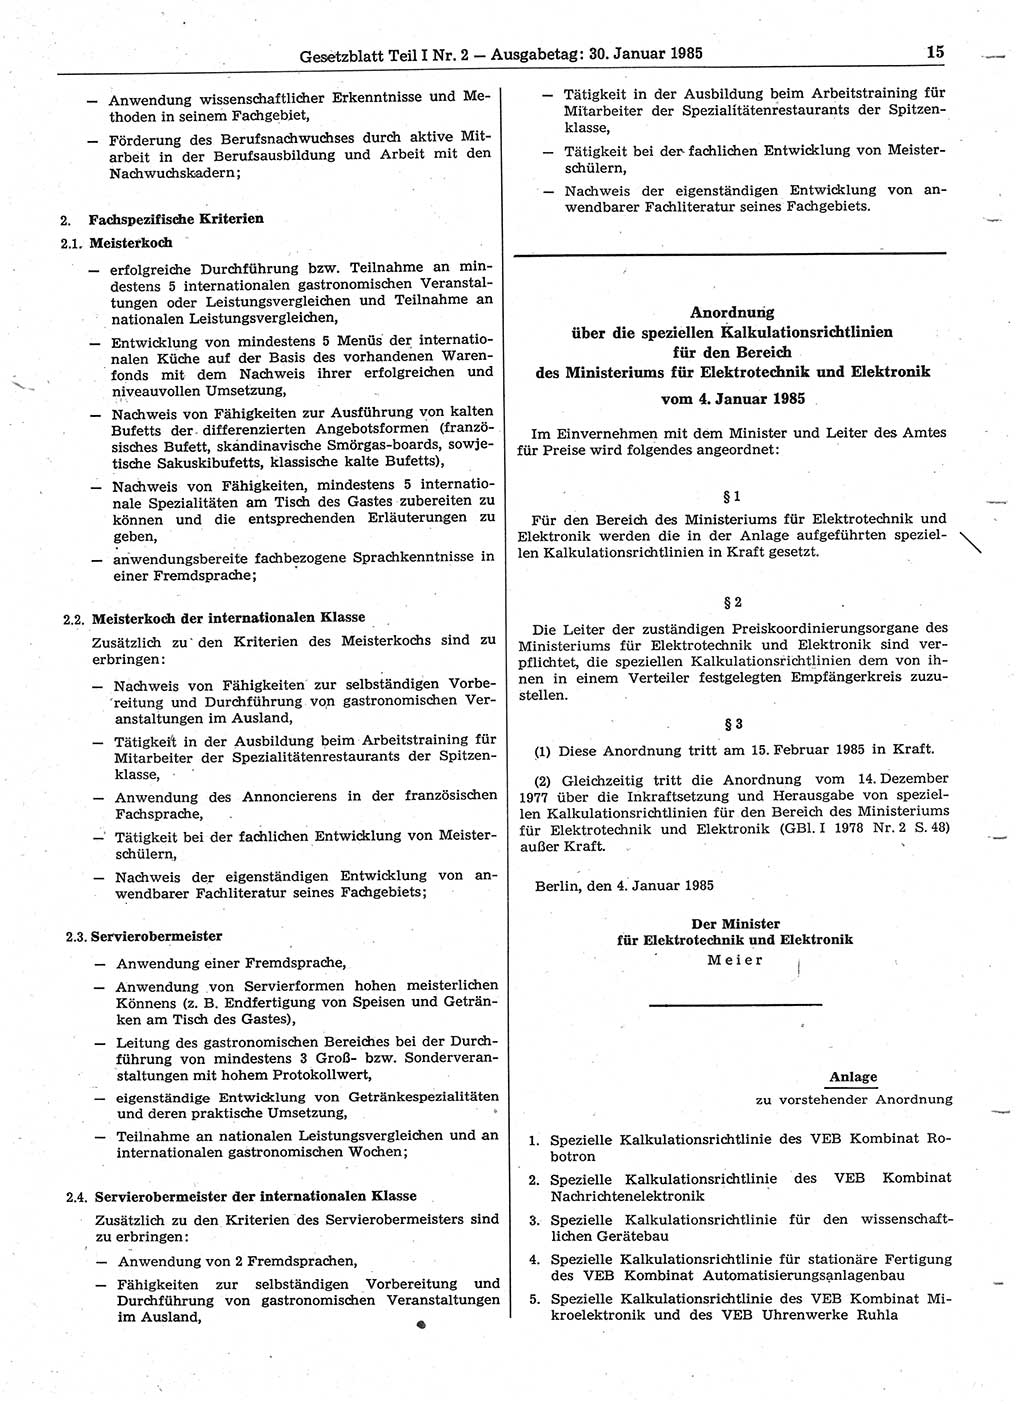 Gesetzblatt (GBl.) der Deutschen Demokratischen Republik (DDR) Teil Ⅰ 1985, Seite 15 (GBl. DDR Ⅰ 1985, S. 15)